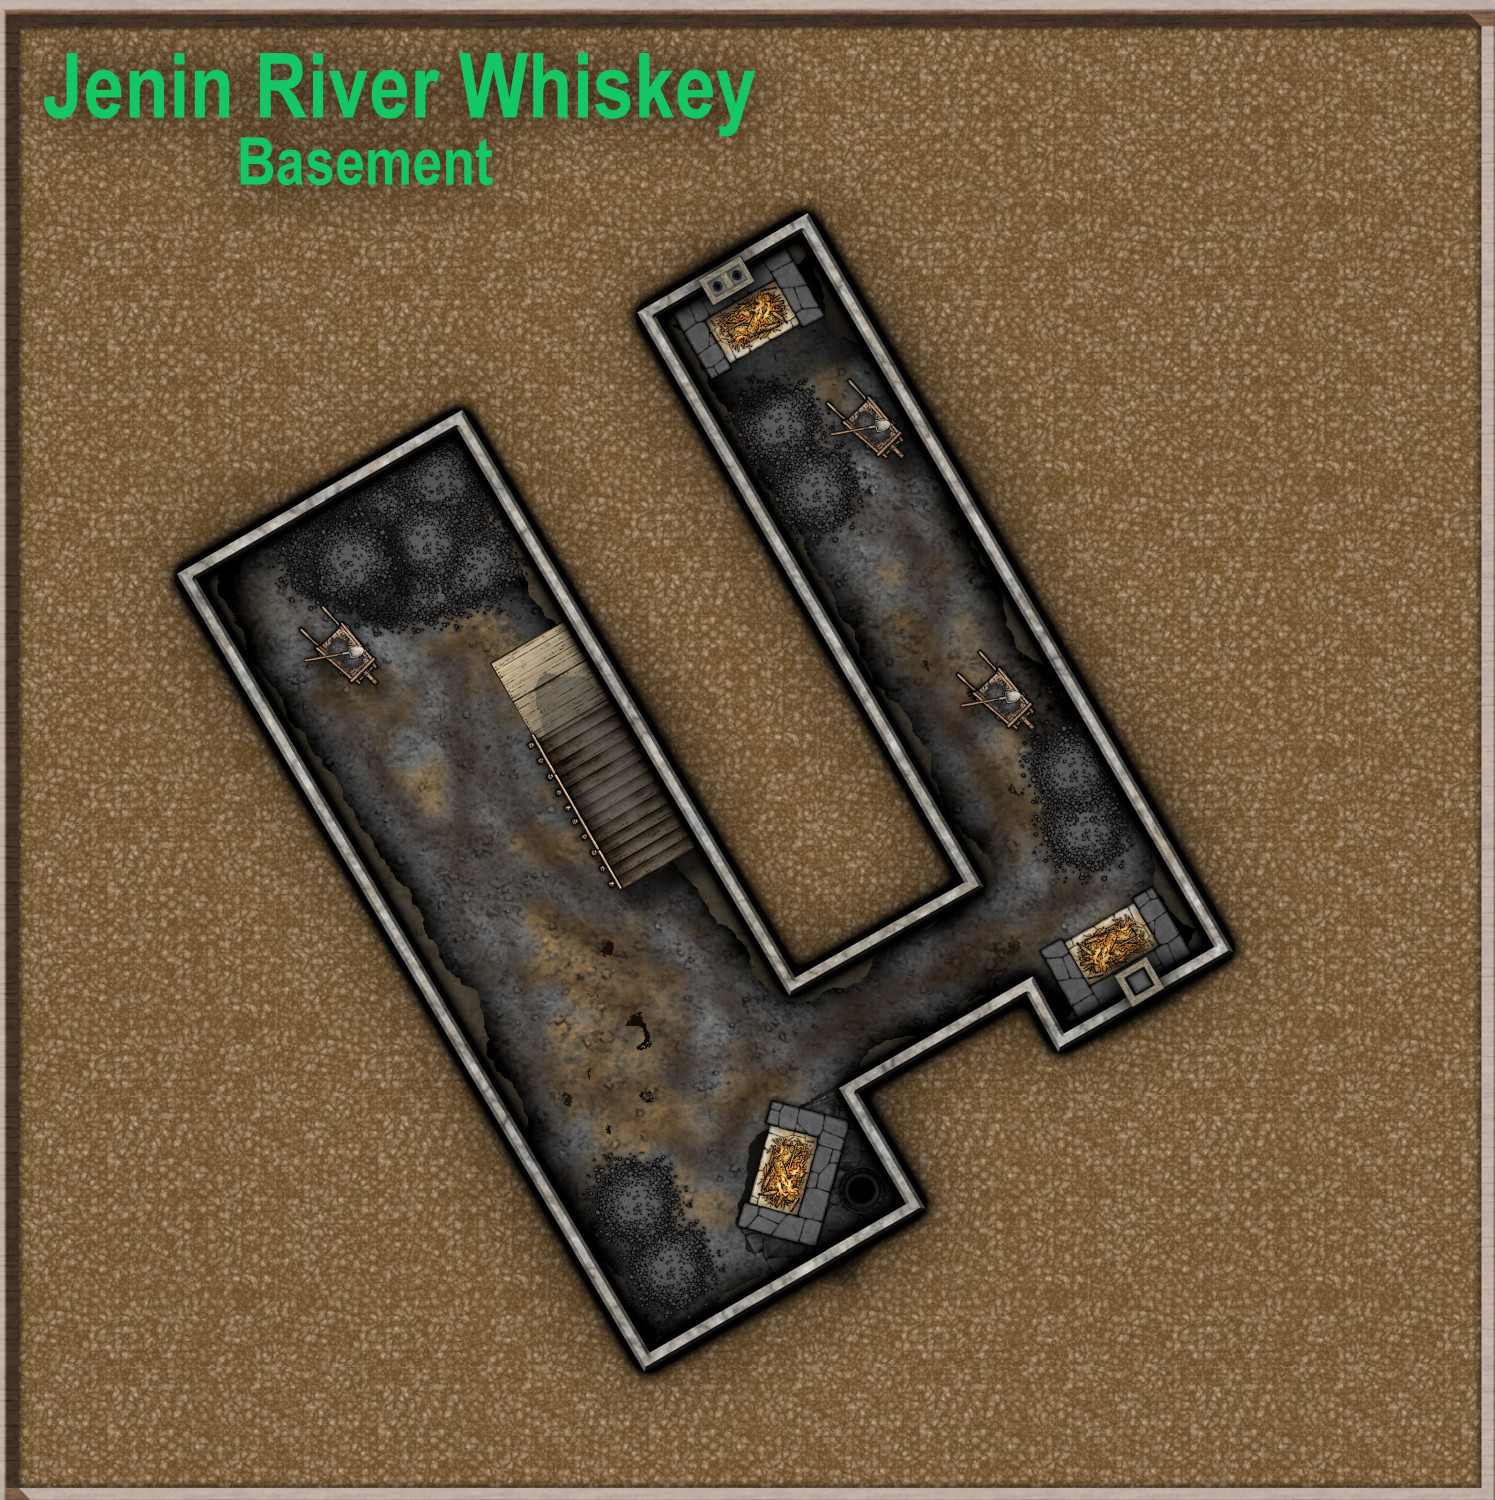 Jenin River Whiskey_Basement.JPG